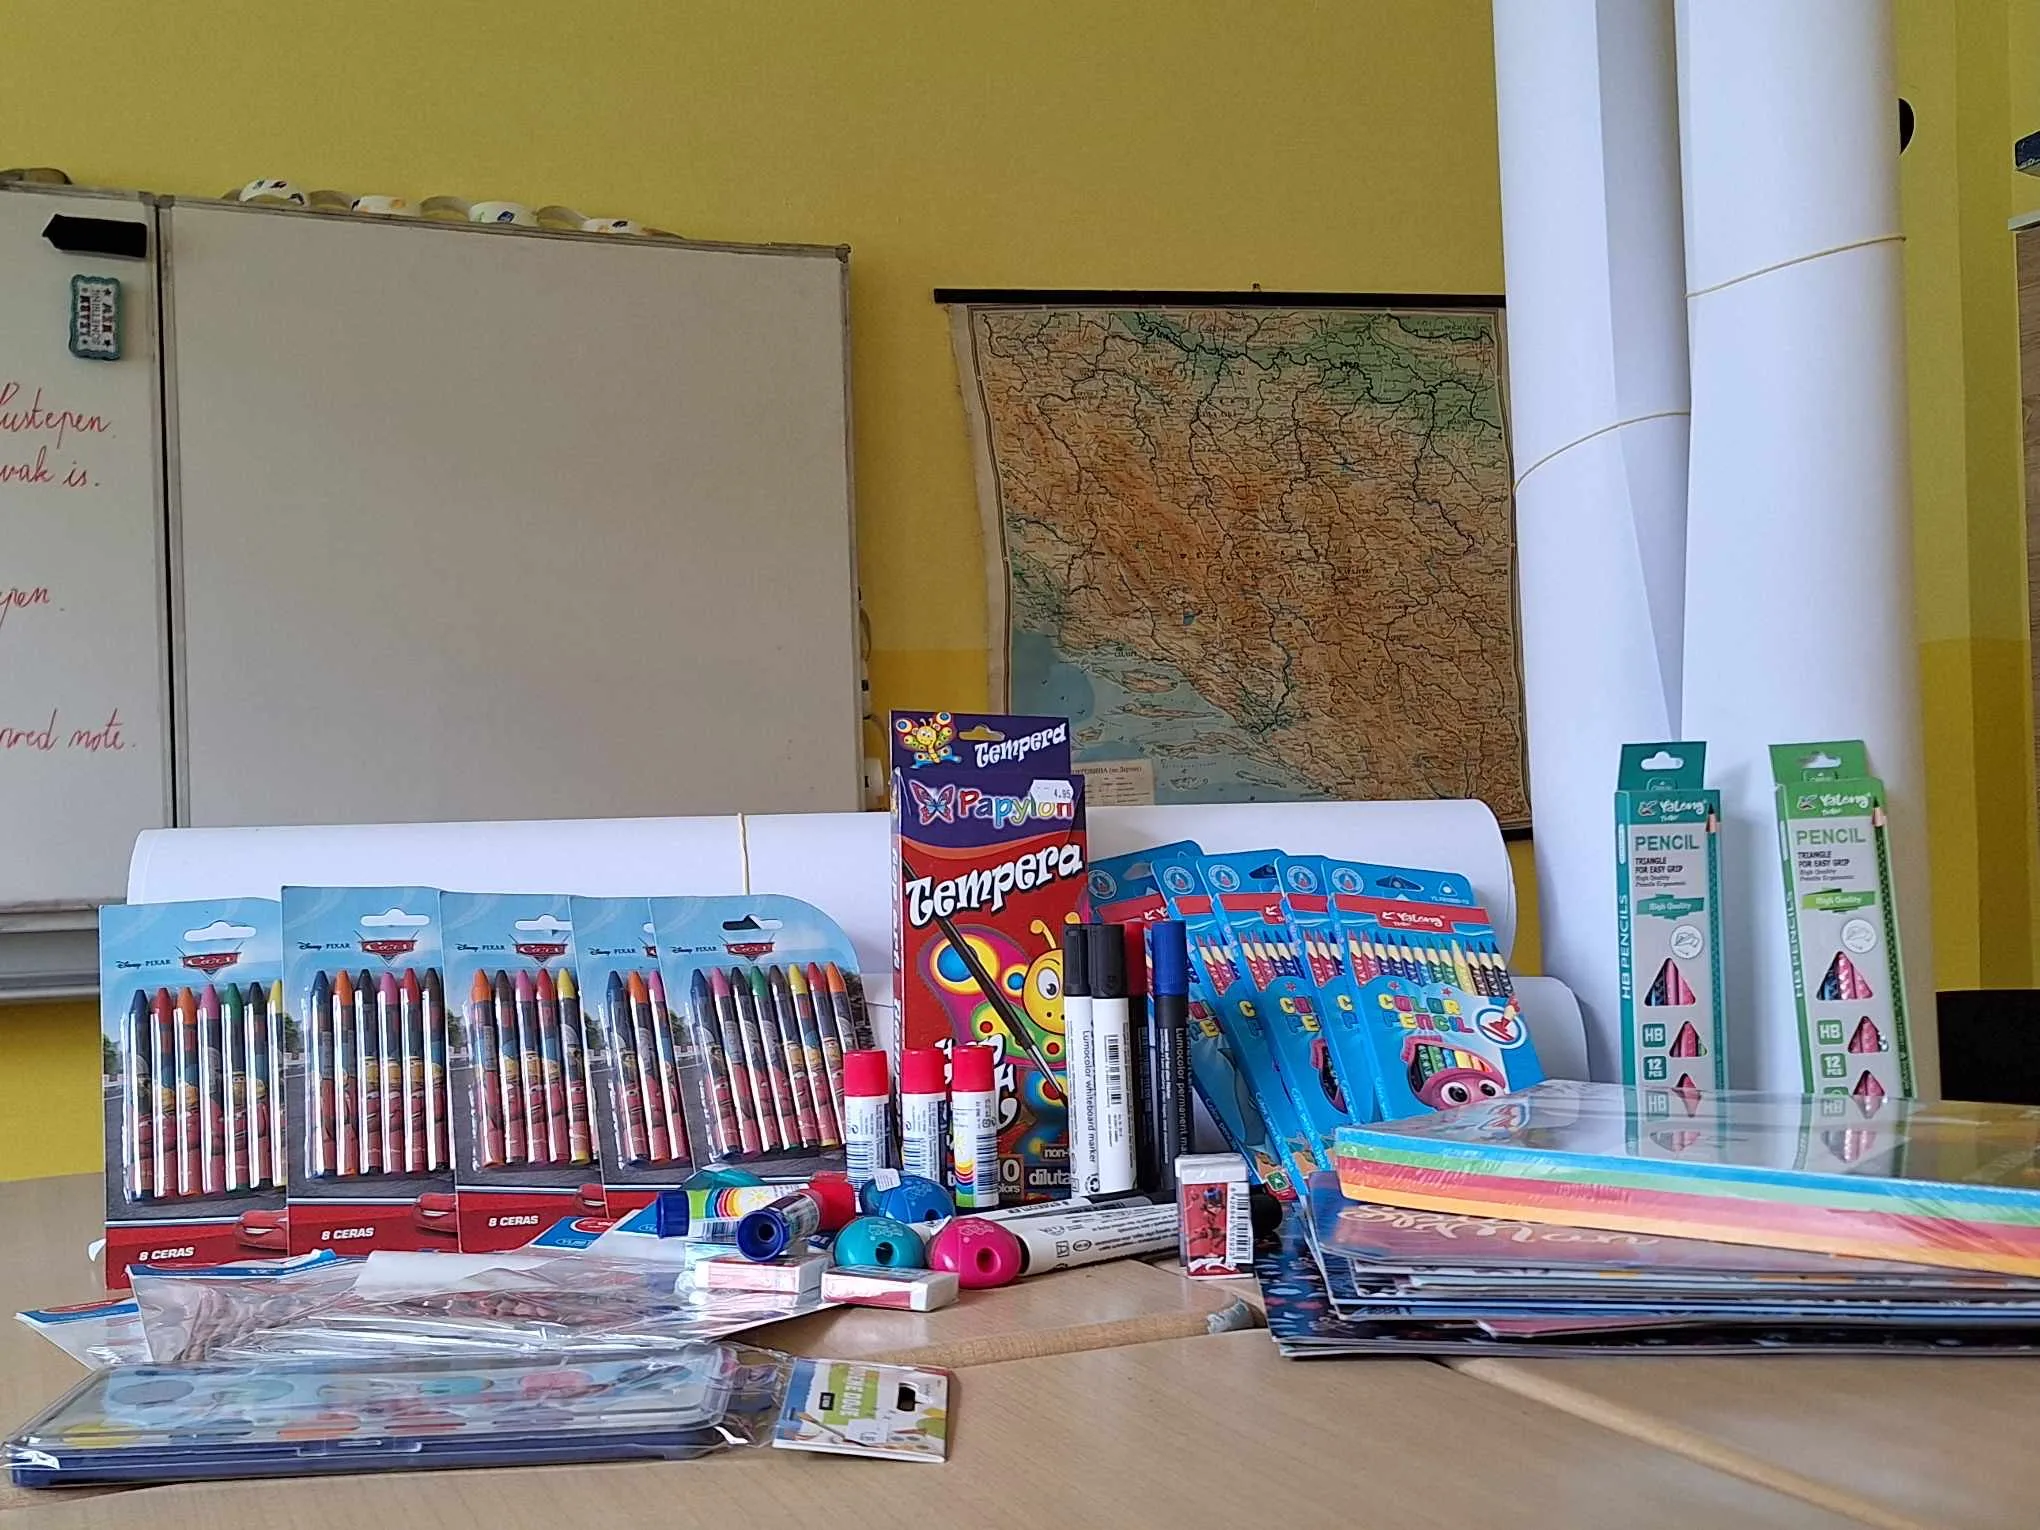 Udruženje građana Divič doniralo vrijedan školski materijal za učenike osnovne škole u Diviču (FOTO)